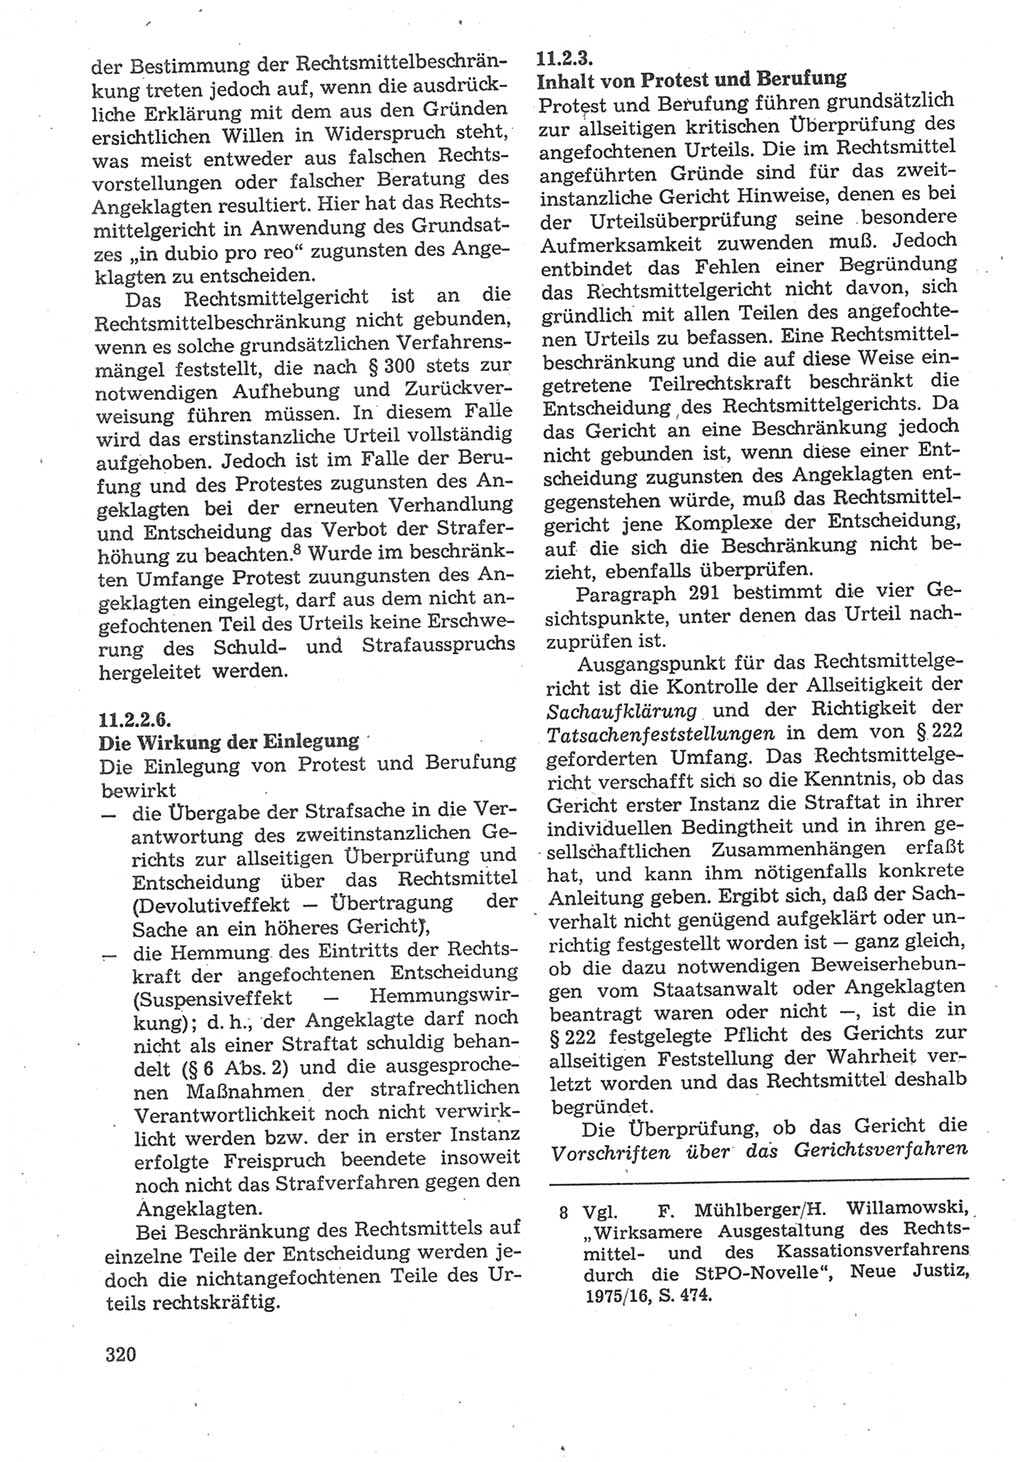 Strafverfahrensrecht [Deutsche Demokratische Republik (DDR)], Lehrbuch 1987, Seite 320 (Strafverf.-R. DDR Lb. 1987, S. 320)